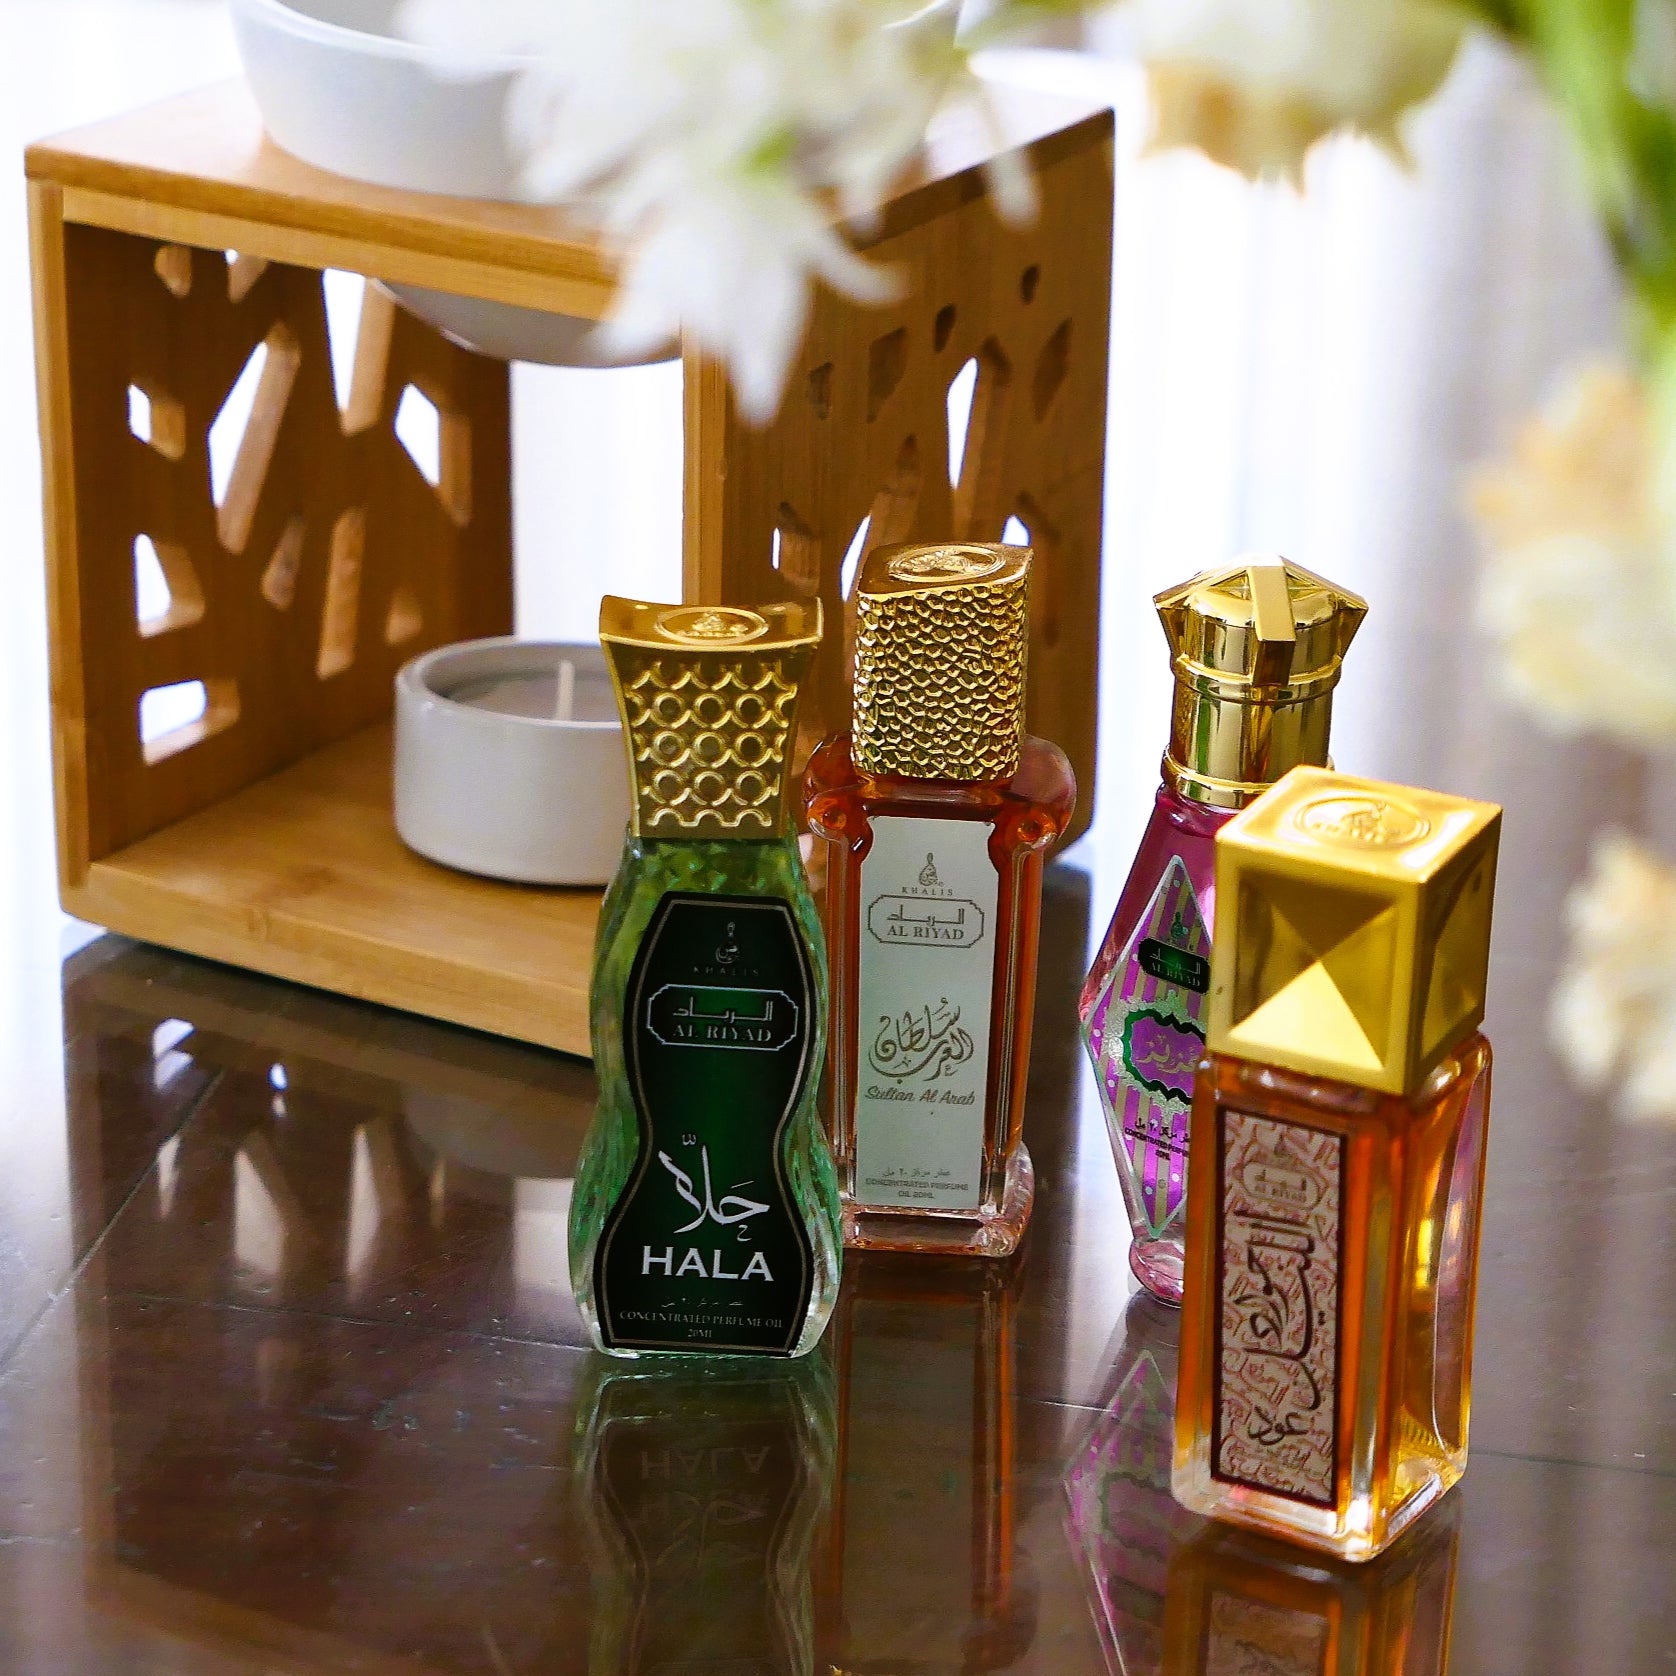 Sultan Fragrances Exclusive Blend “Saffron Musk” - Pure Perfume Oil